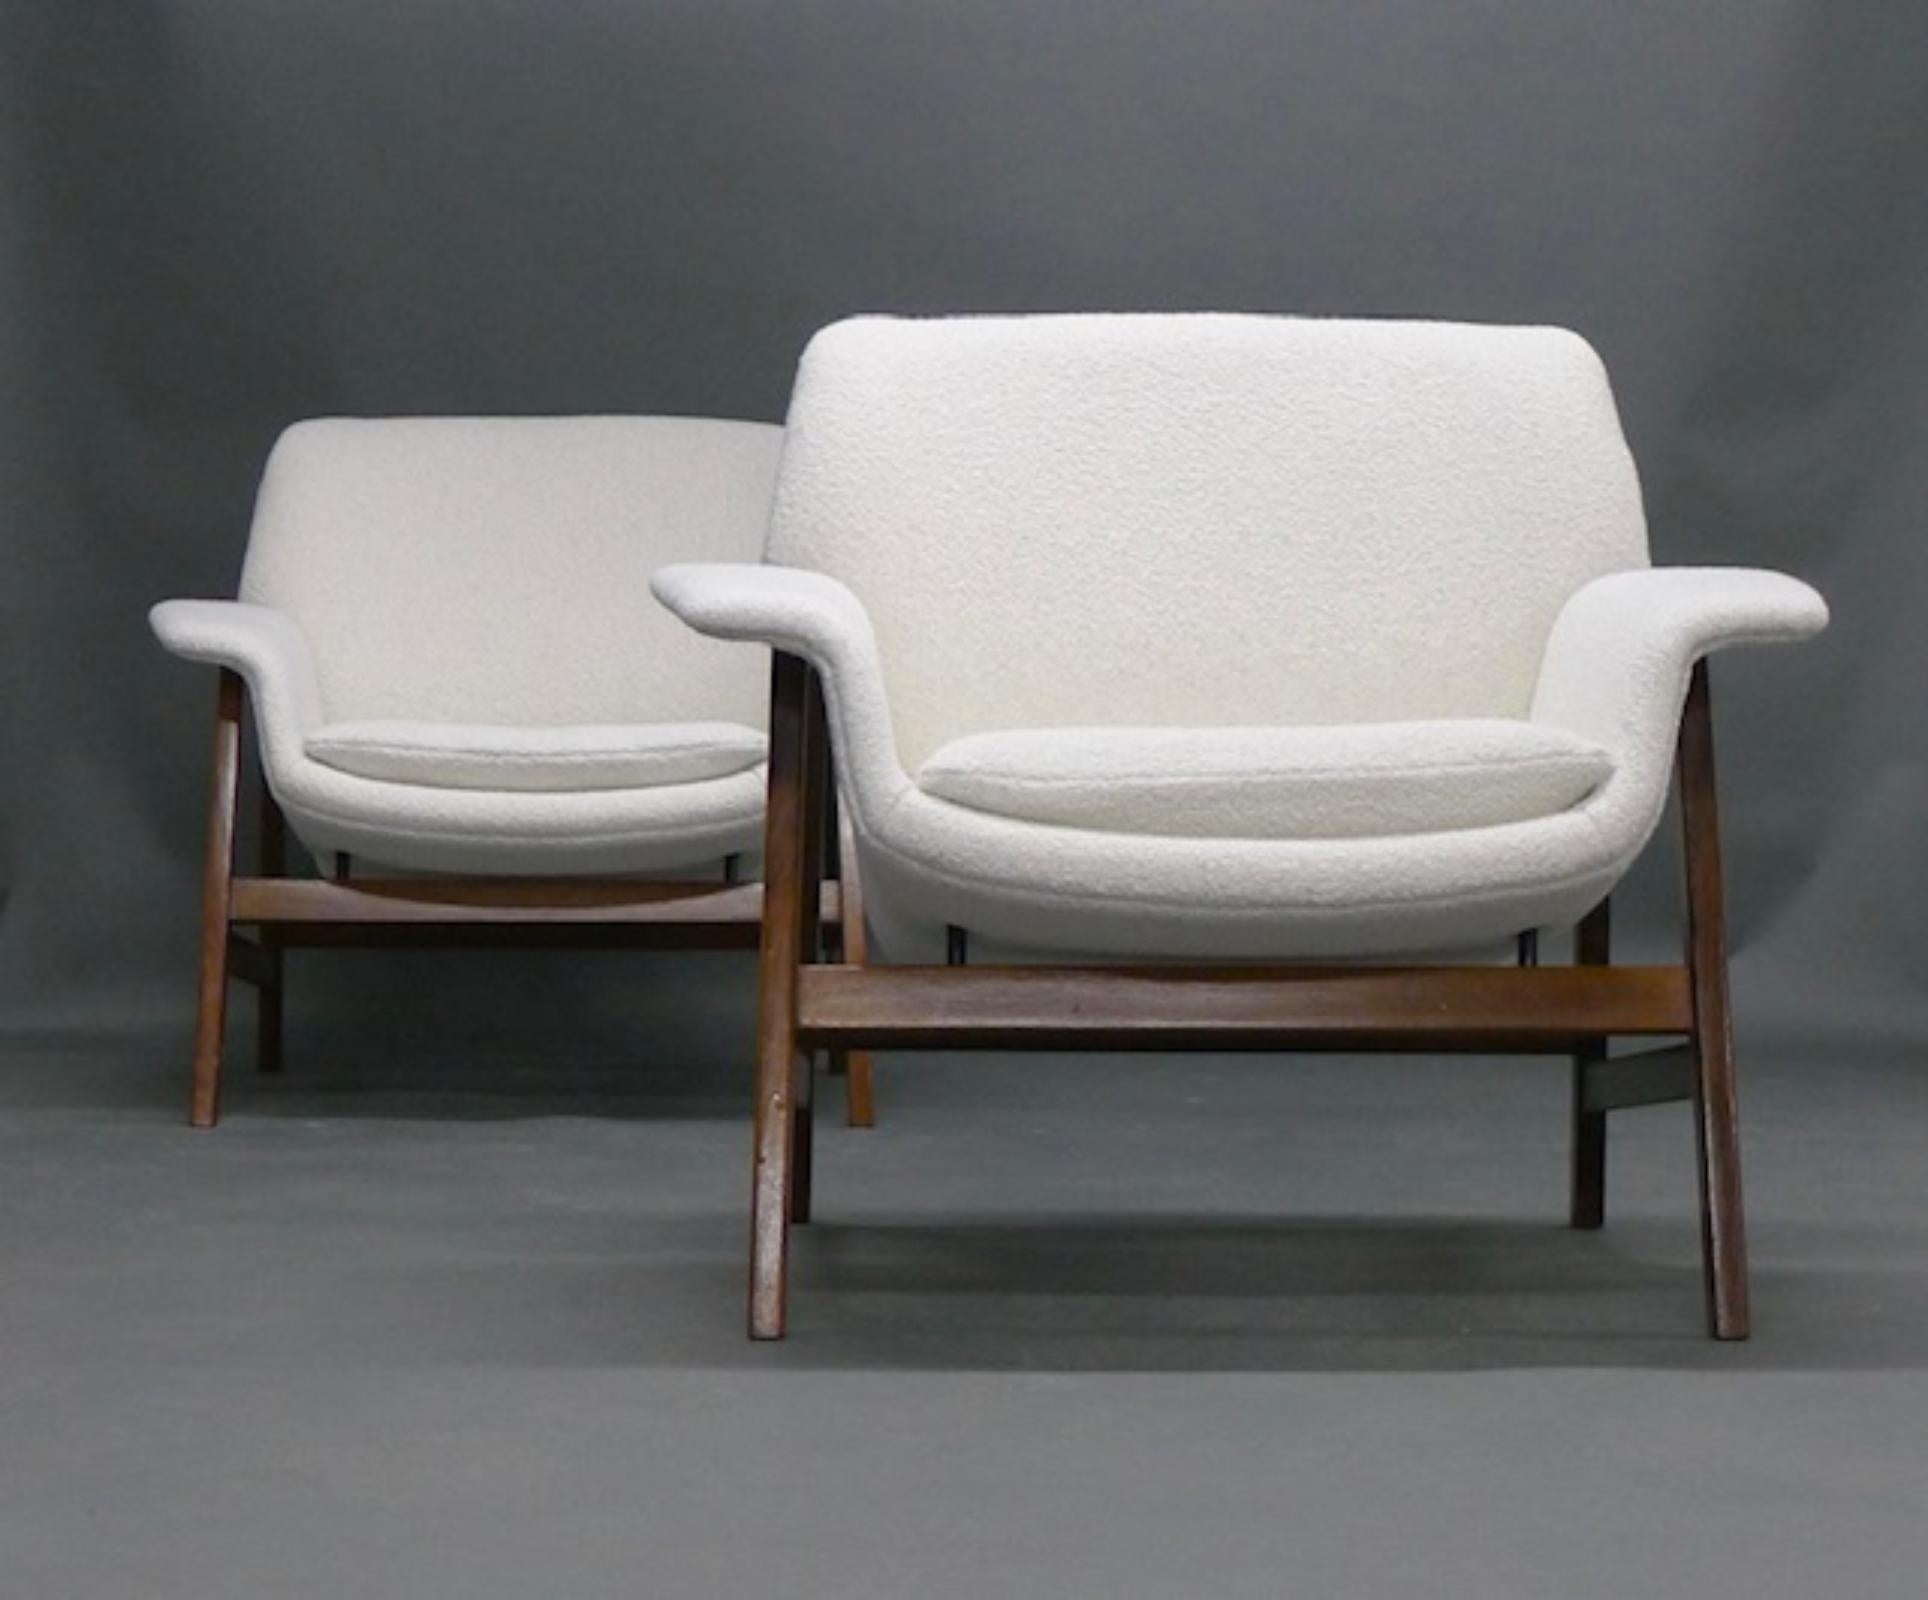 Wunderschönes Paar Loungesessel, entworfen von Gianfranco Frattini und hergestellt von Cassina, 1950er Jahre.

Modell 849 in Nussbaum, neu gepolstert mit weißem Bouclé-Stoff

74cm hoch, 84cm breit, 70cm tief, Sitzhöhe 42cm

Preis ist für 2 Stühle